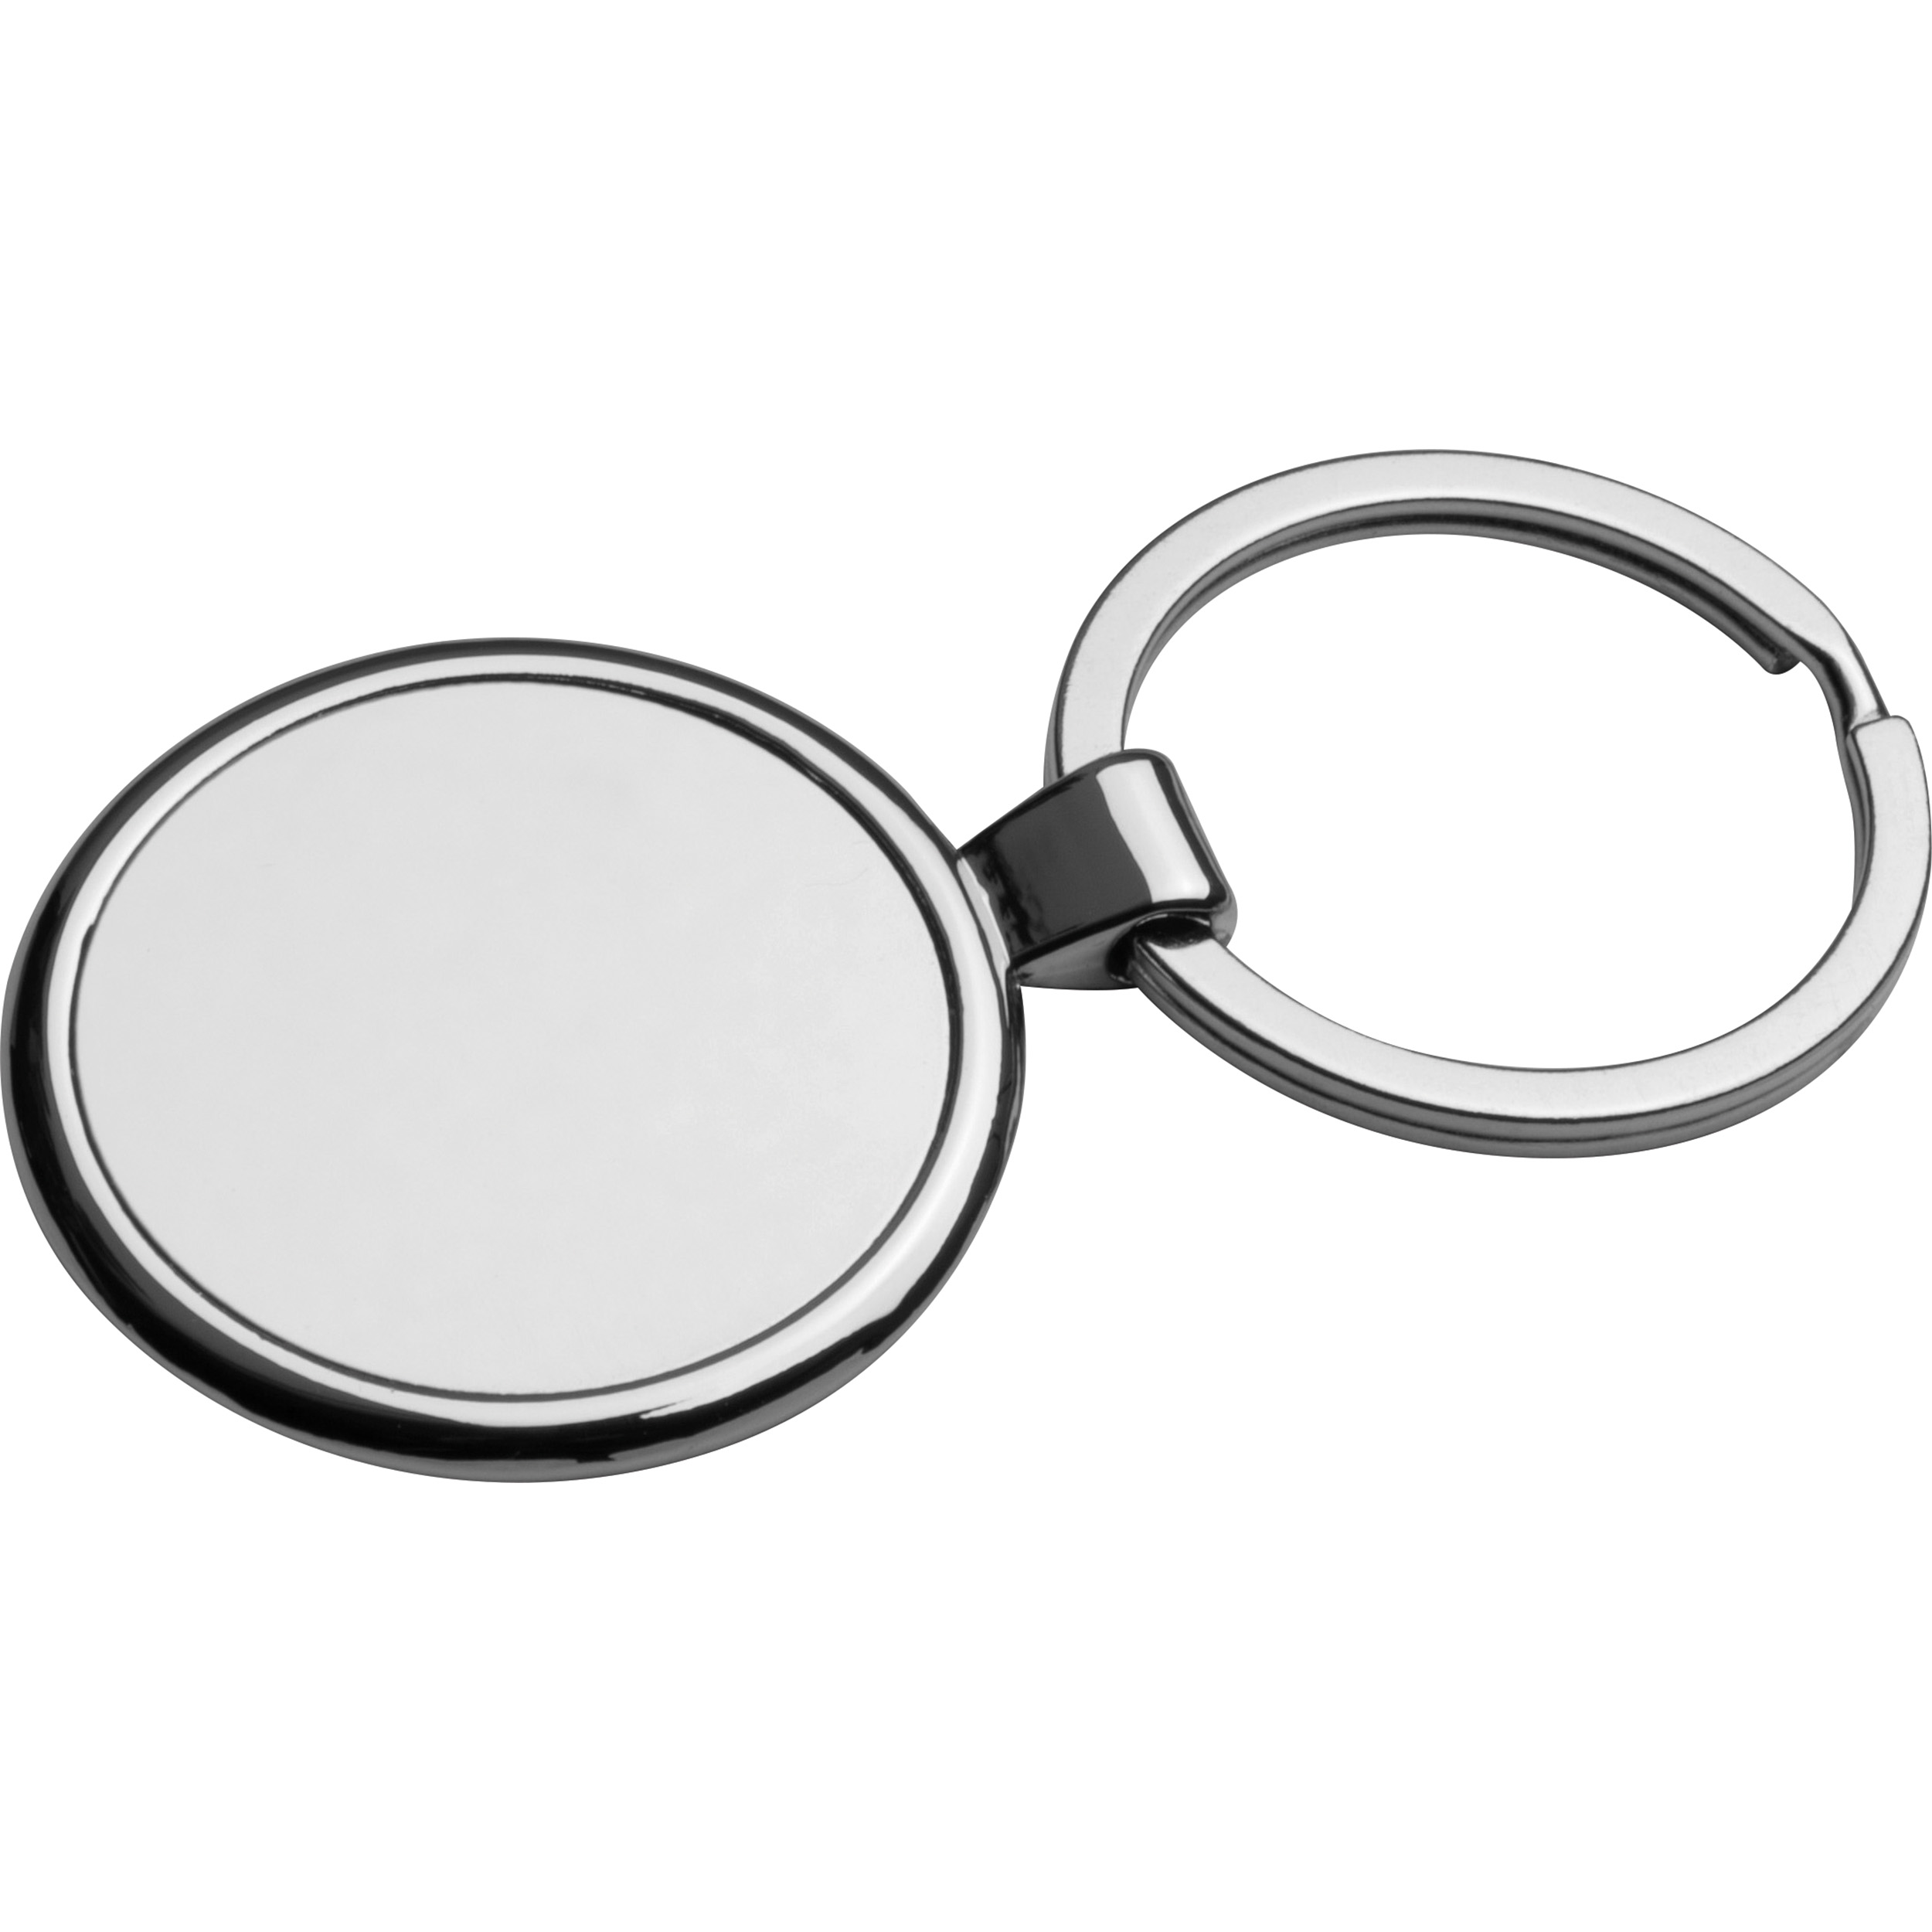 Engraved Chrome Keychain - Halsall